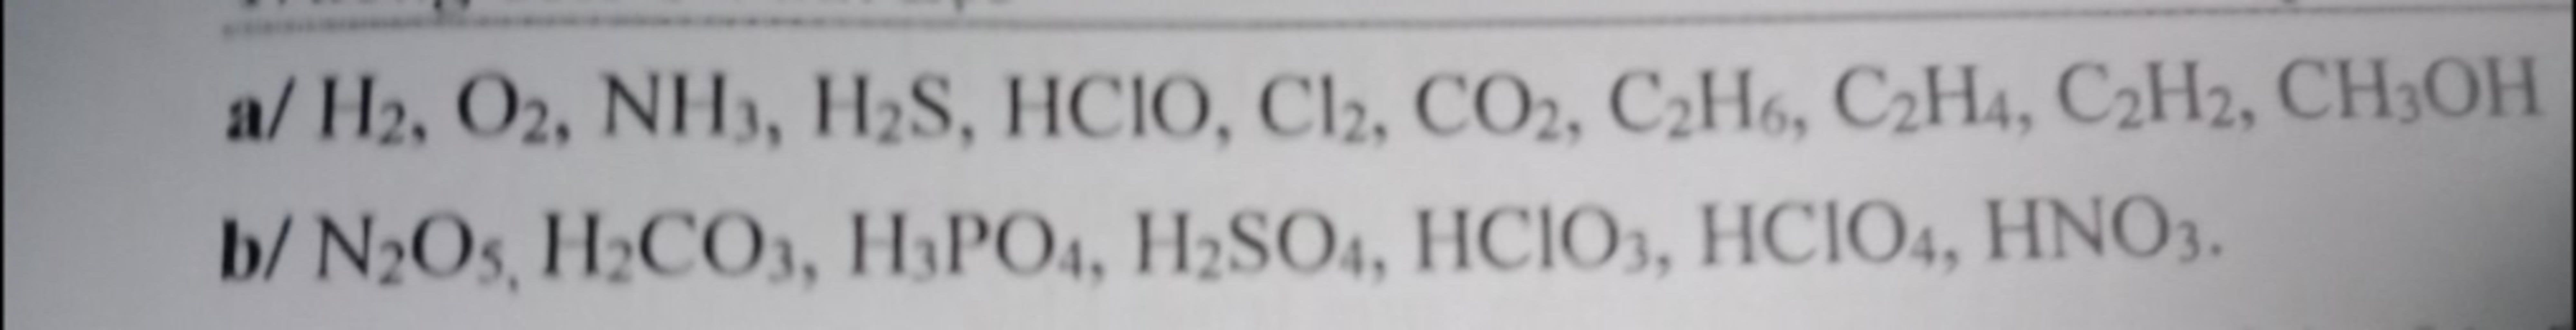 Trong các chất H2SO4, CH3OH, H2S, HNO3, chất nào là chất điện li yếu?
